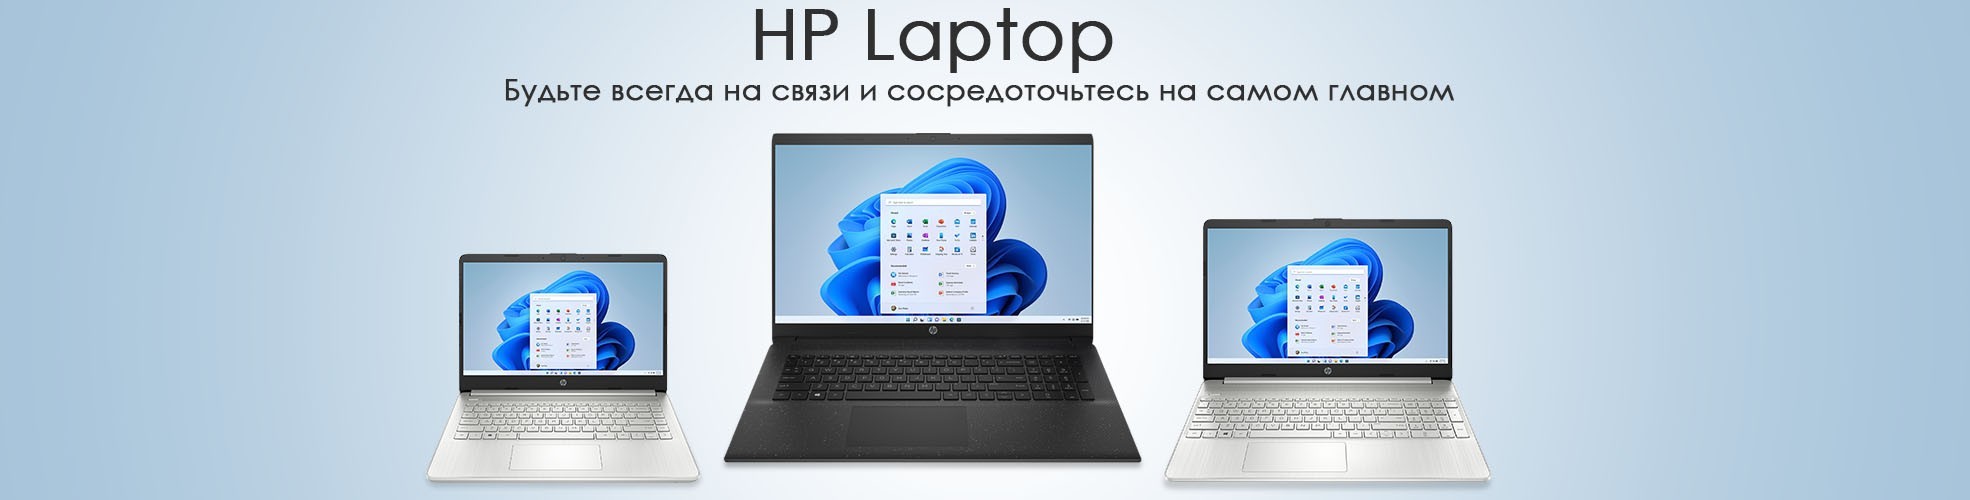 Ноутбуки Hp в Ташкенте Купить в Узбекистане по Лучшим ценам